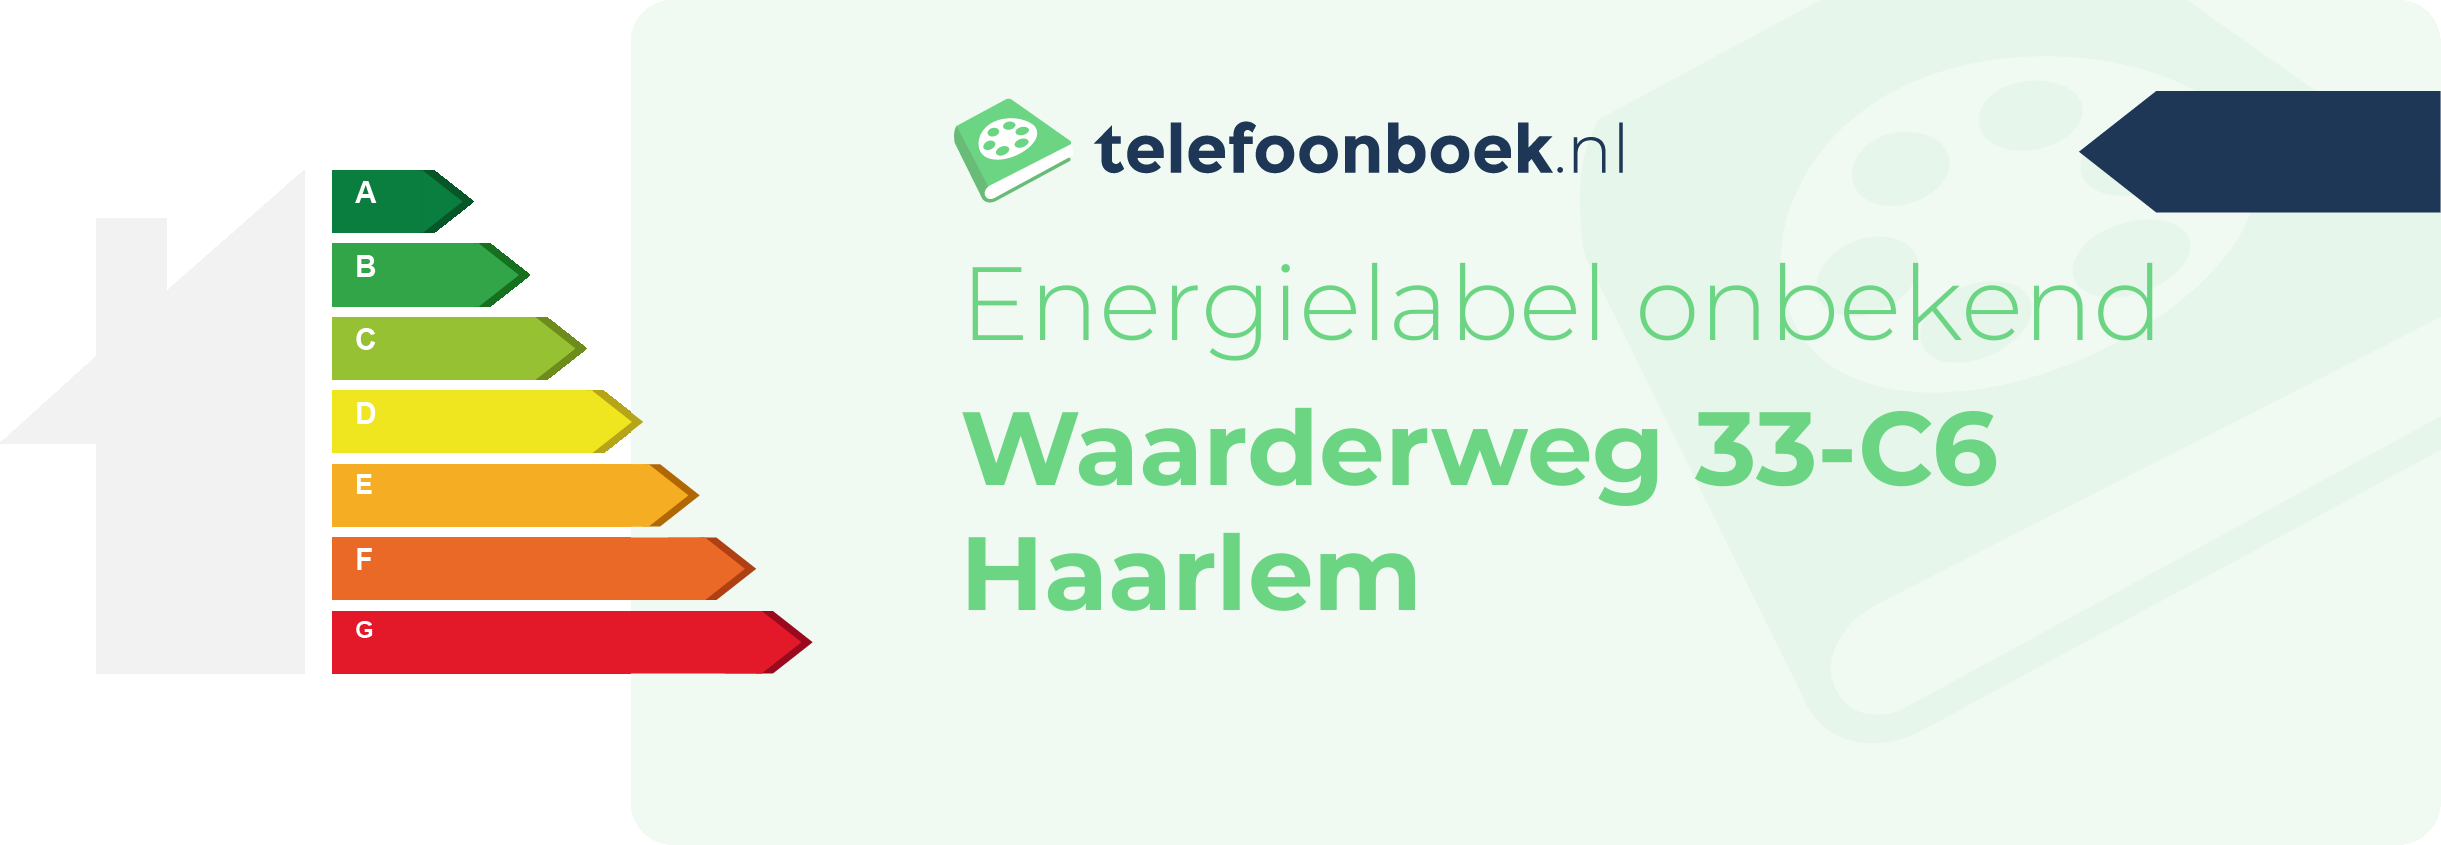 Energielabel Waarderweg 33-C6 Haarlem